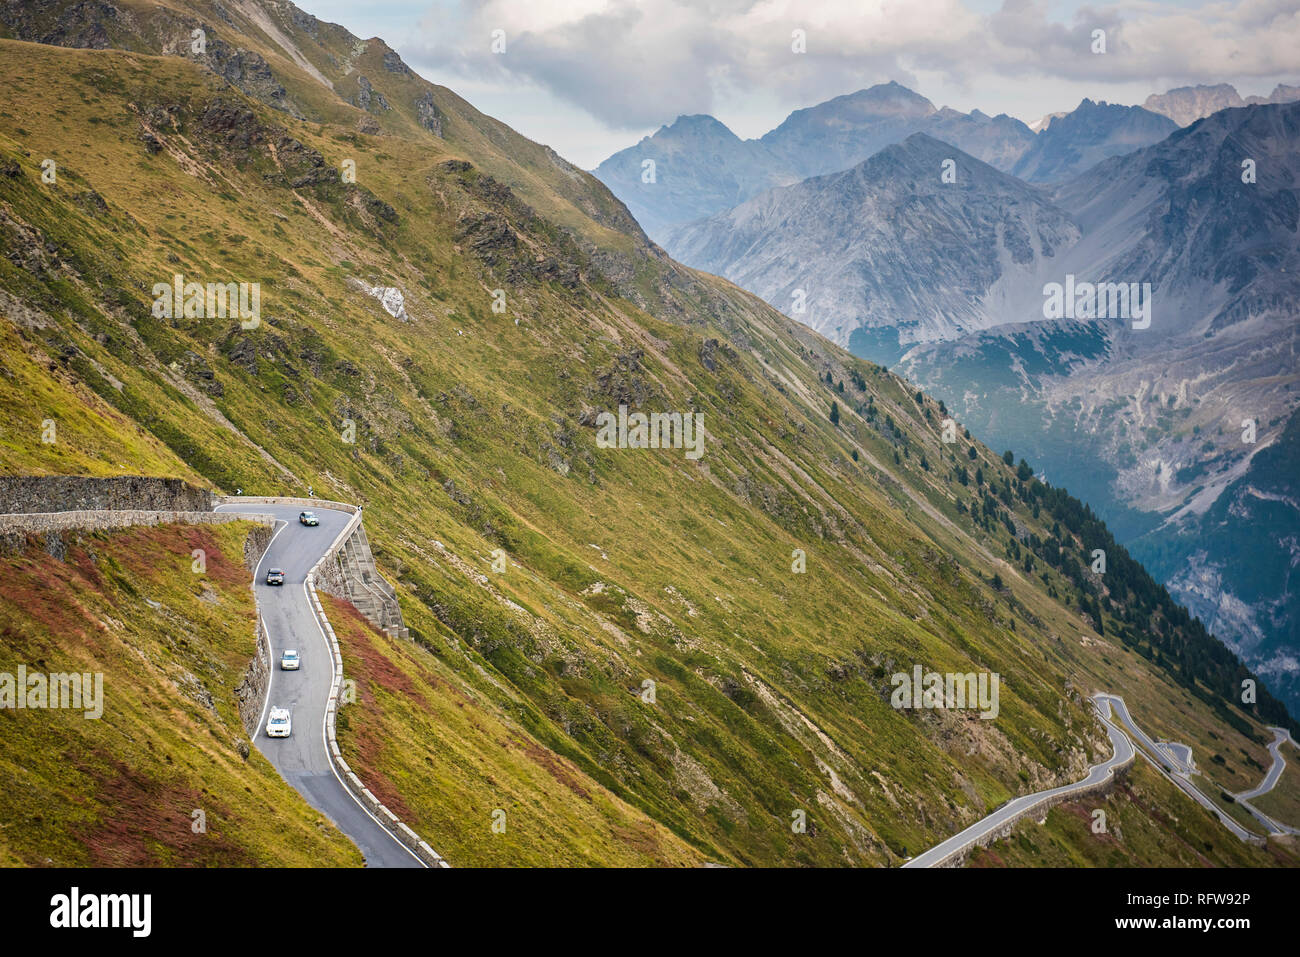 Stilfser Joch, Südtirol Seite, Valtellina, Lombardei, Italien, Europa Stockfoto